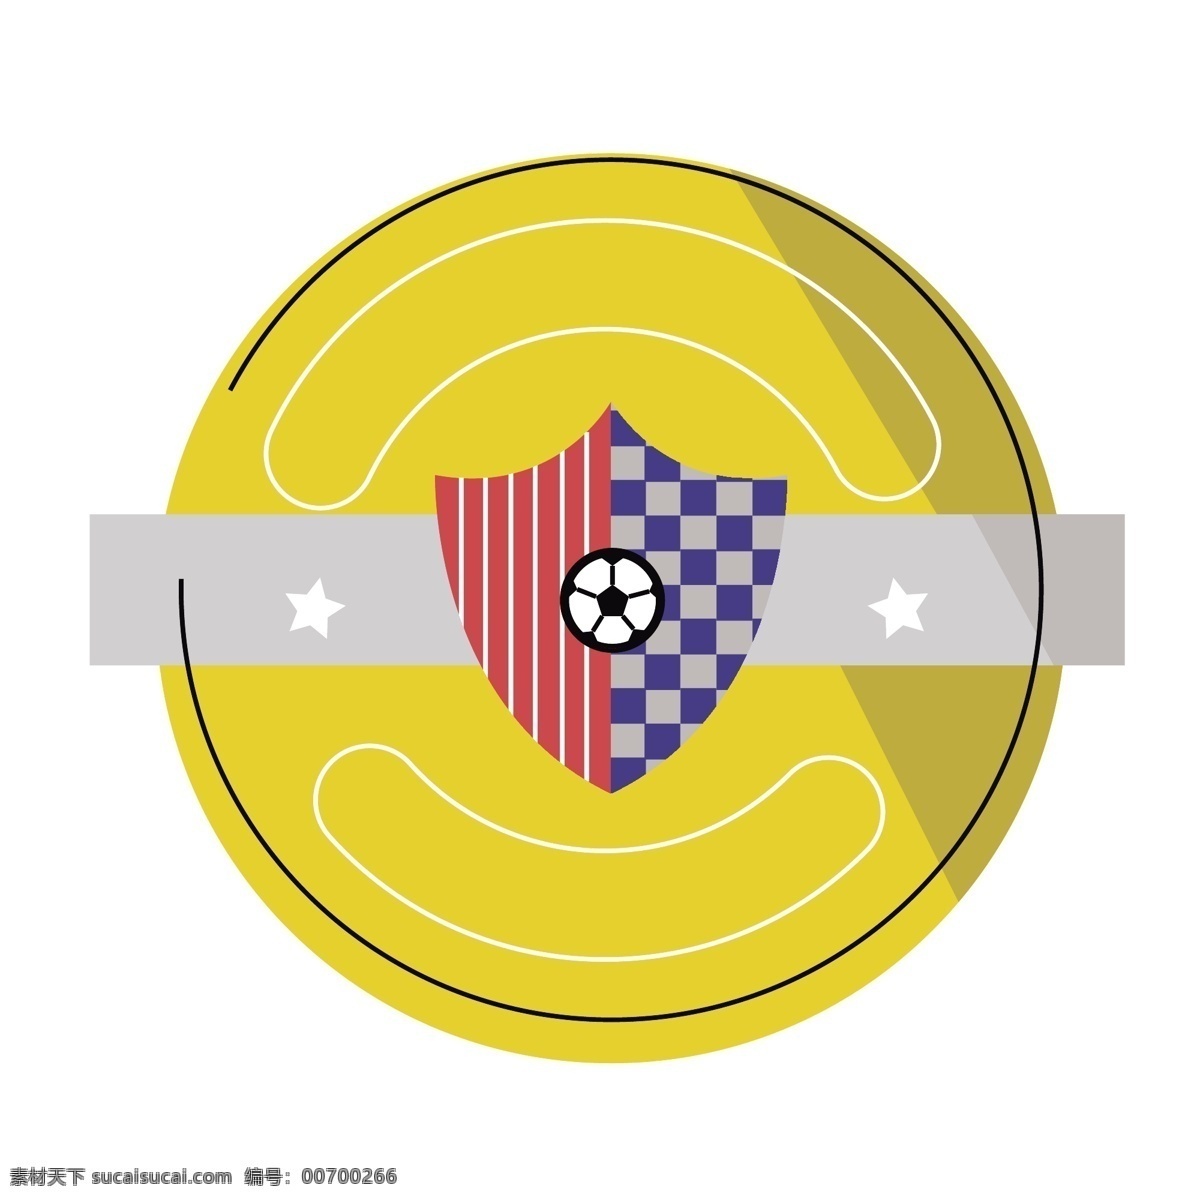 卡通 足球 标 矢量 个性 卡通足球 足球队徽 队徽 个性的 个性的队徽 创意 创意队徽